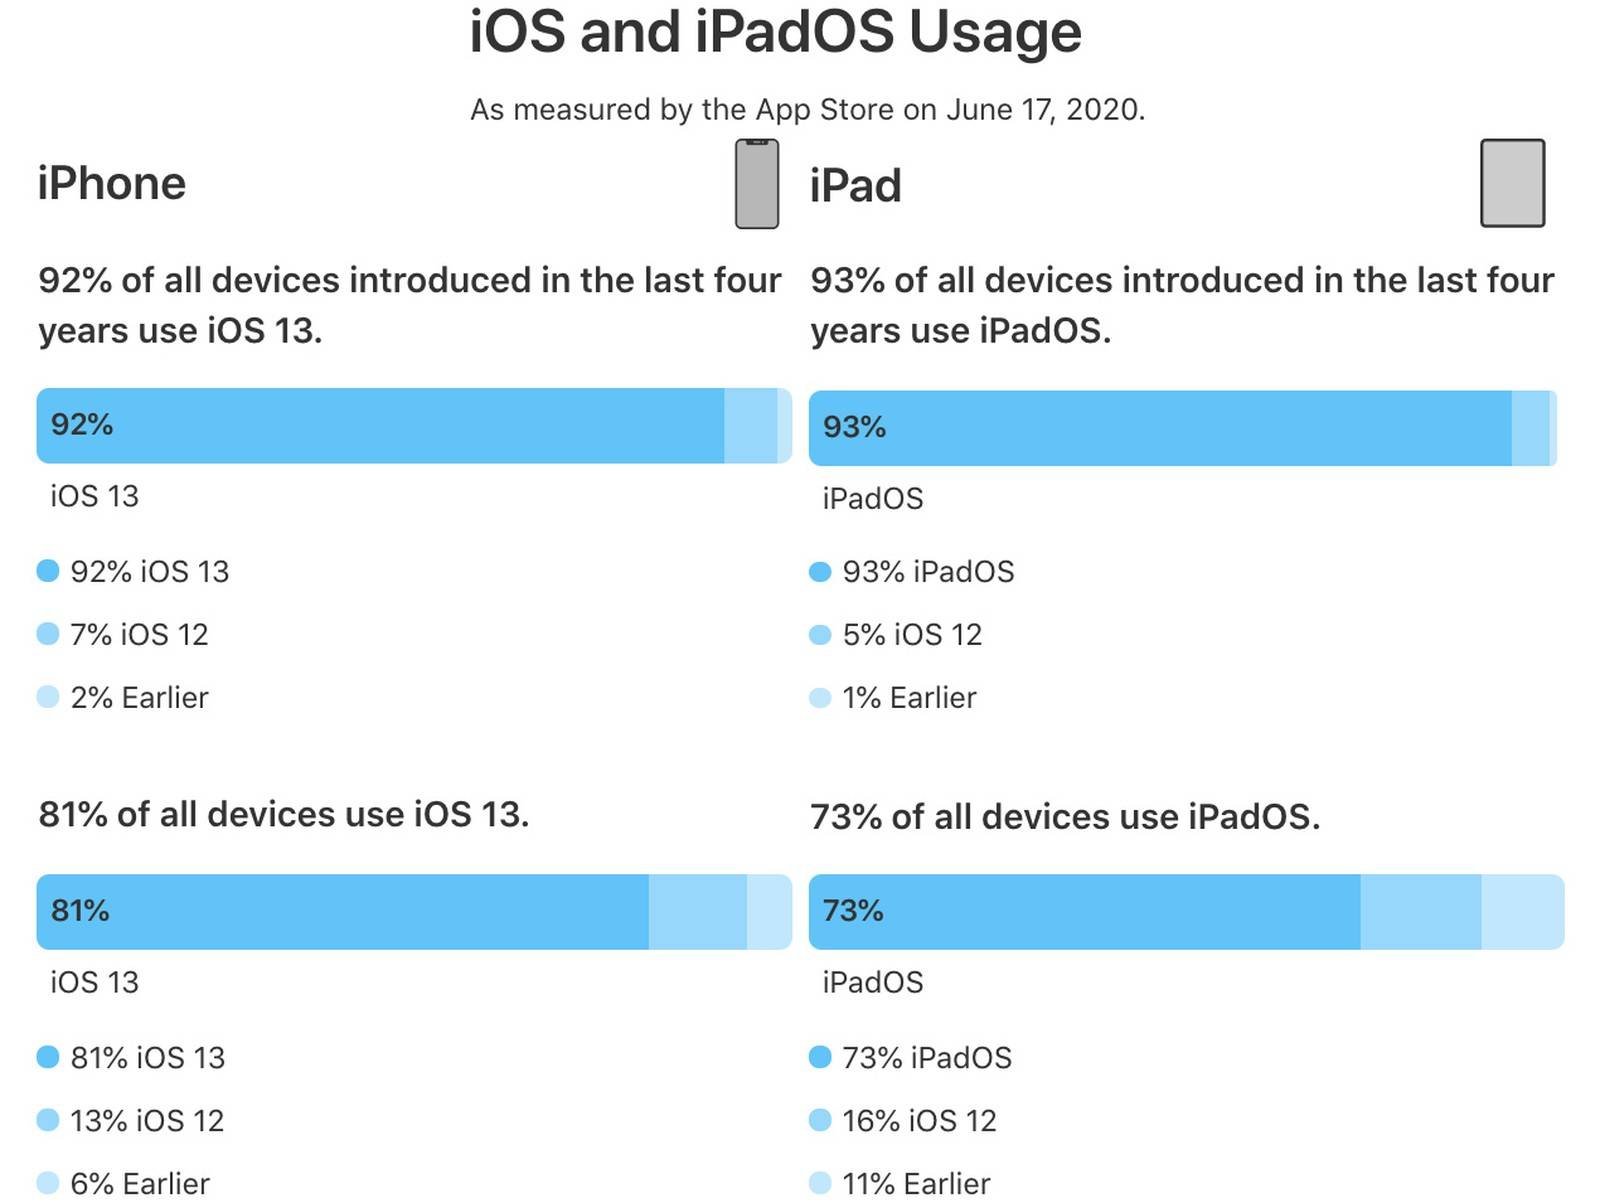 最近4年发布的iPhone有92%都安装了iOS 13